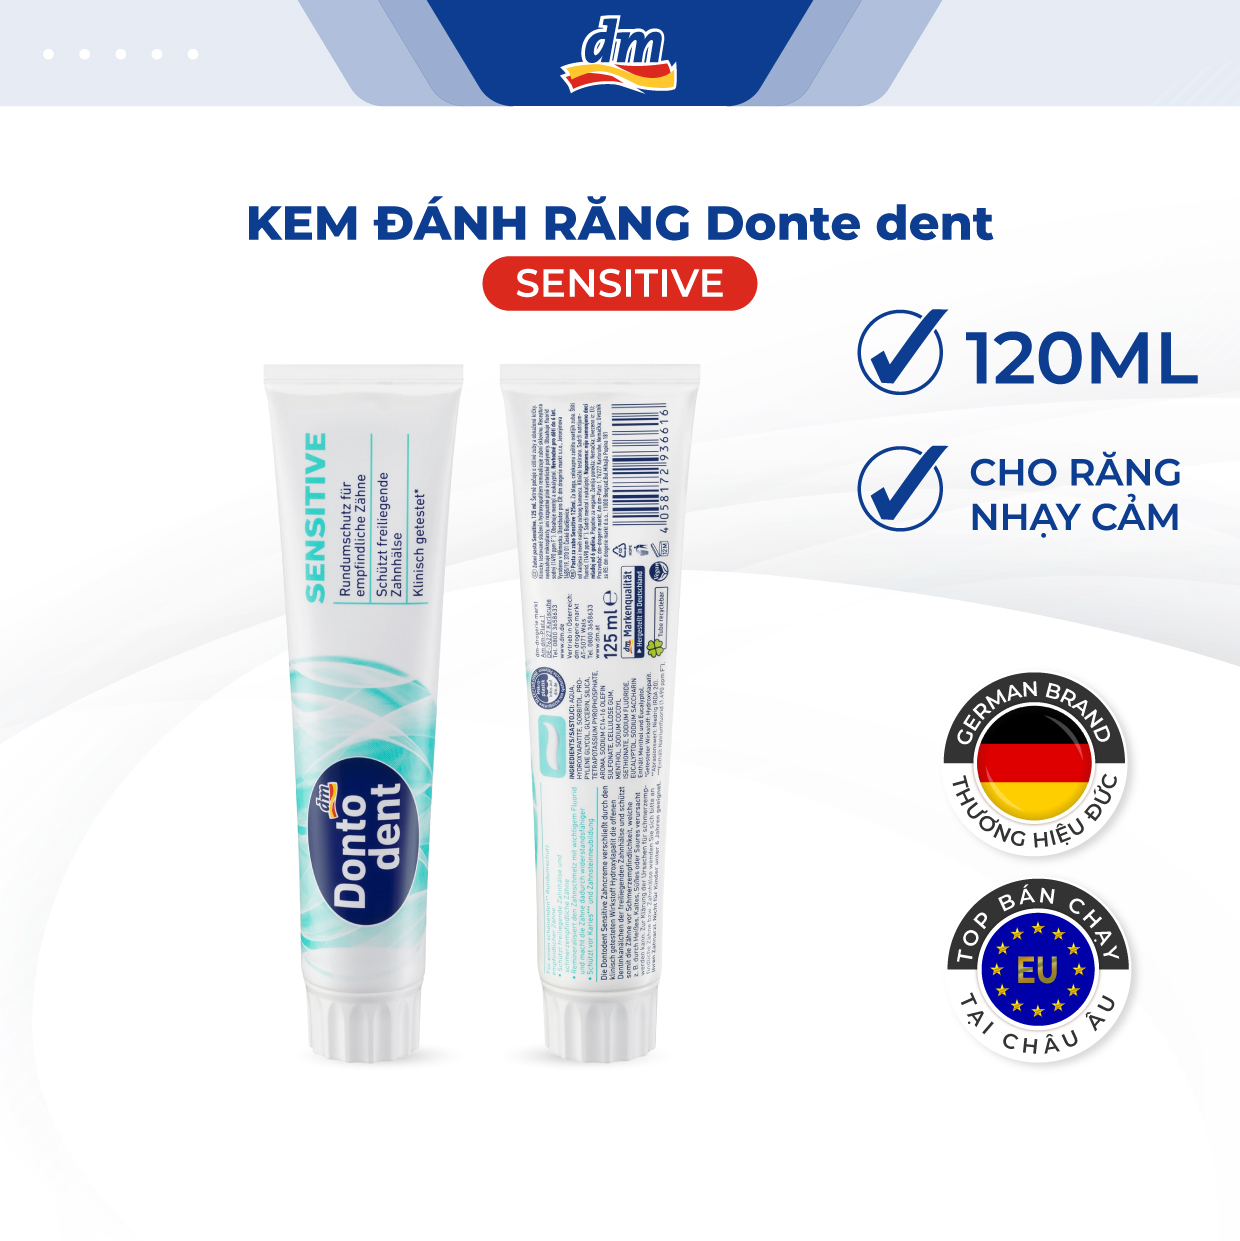 Kem đánh răng DONTODENT Sensitive cho răng nhạy cảm - hàng nhập khẩu Đức